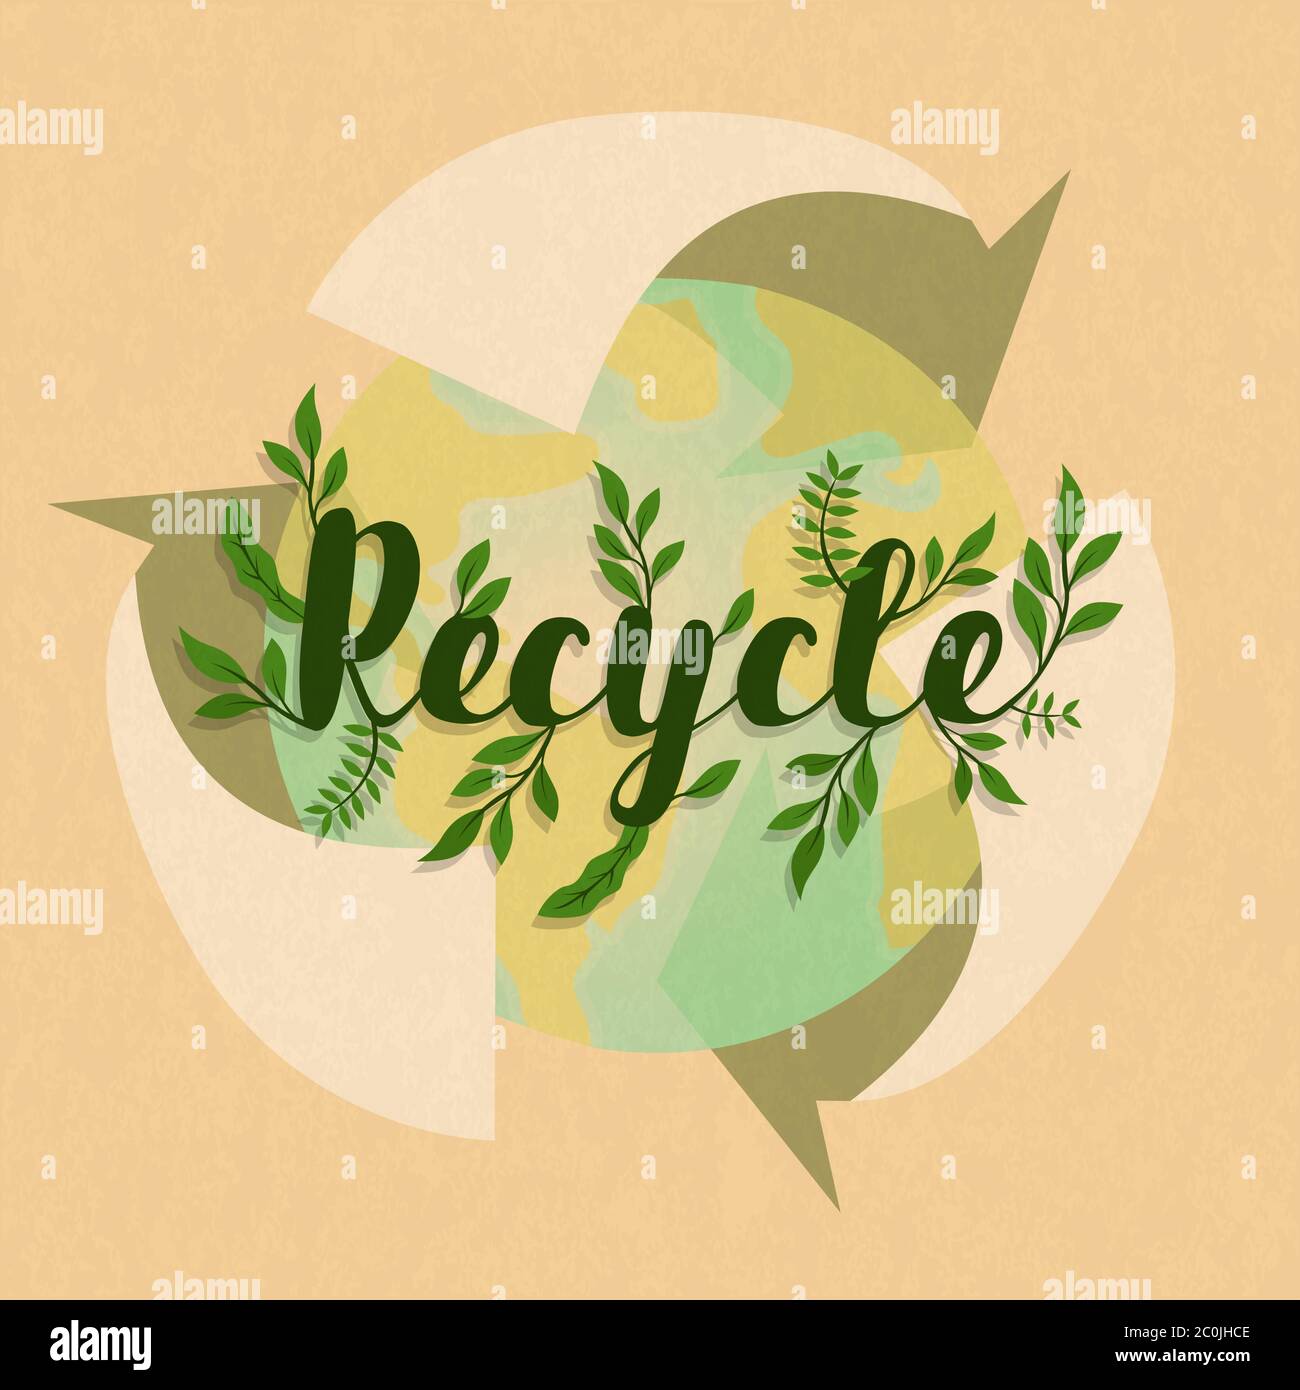 Recycling Symbol Illustration mit grüner Erde Planeten Karte und Pflanzenblatt. Umwelt Hilfekonzept für Recycling-Aktivitäten. Stock Vektor